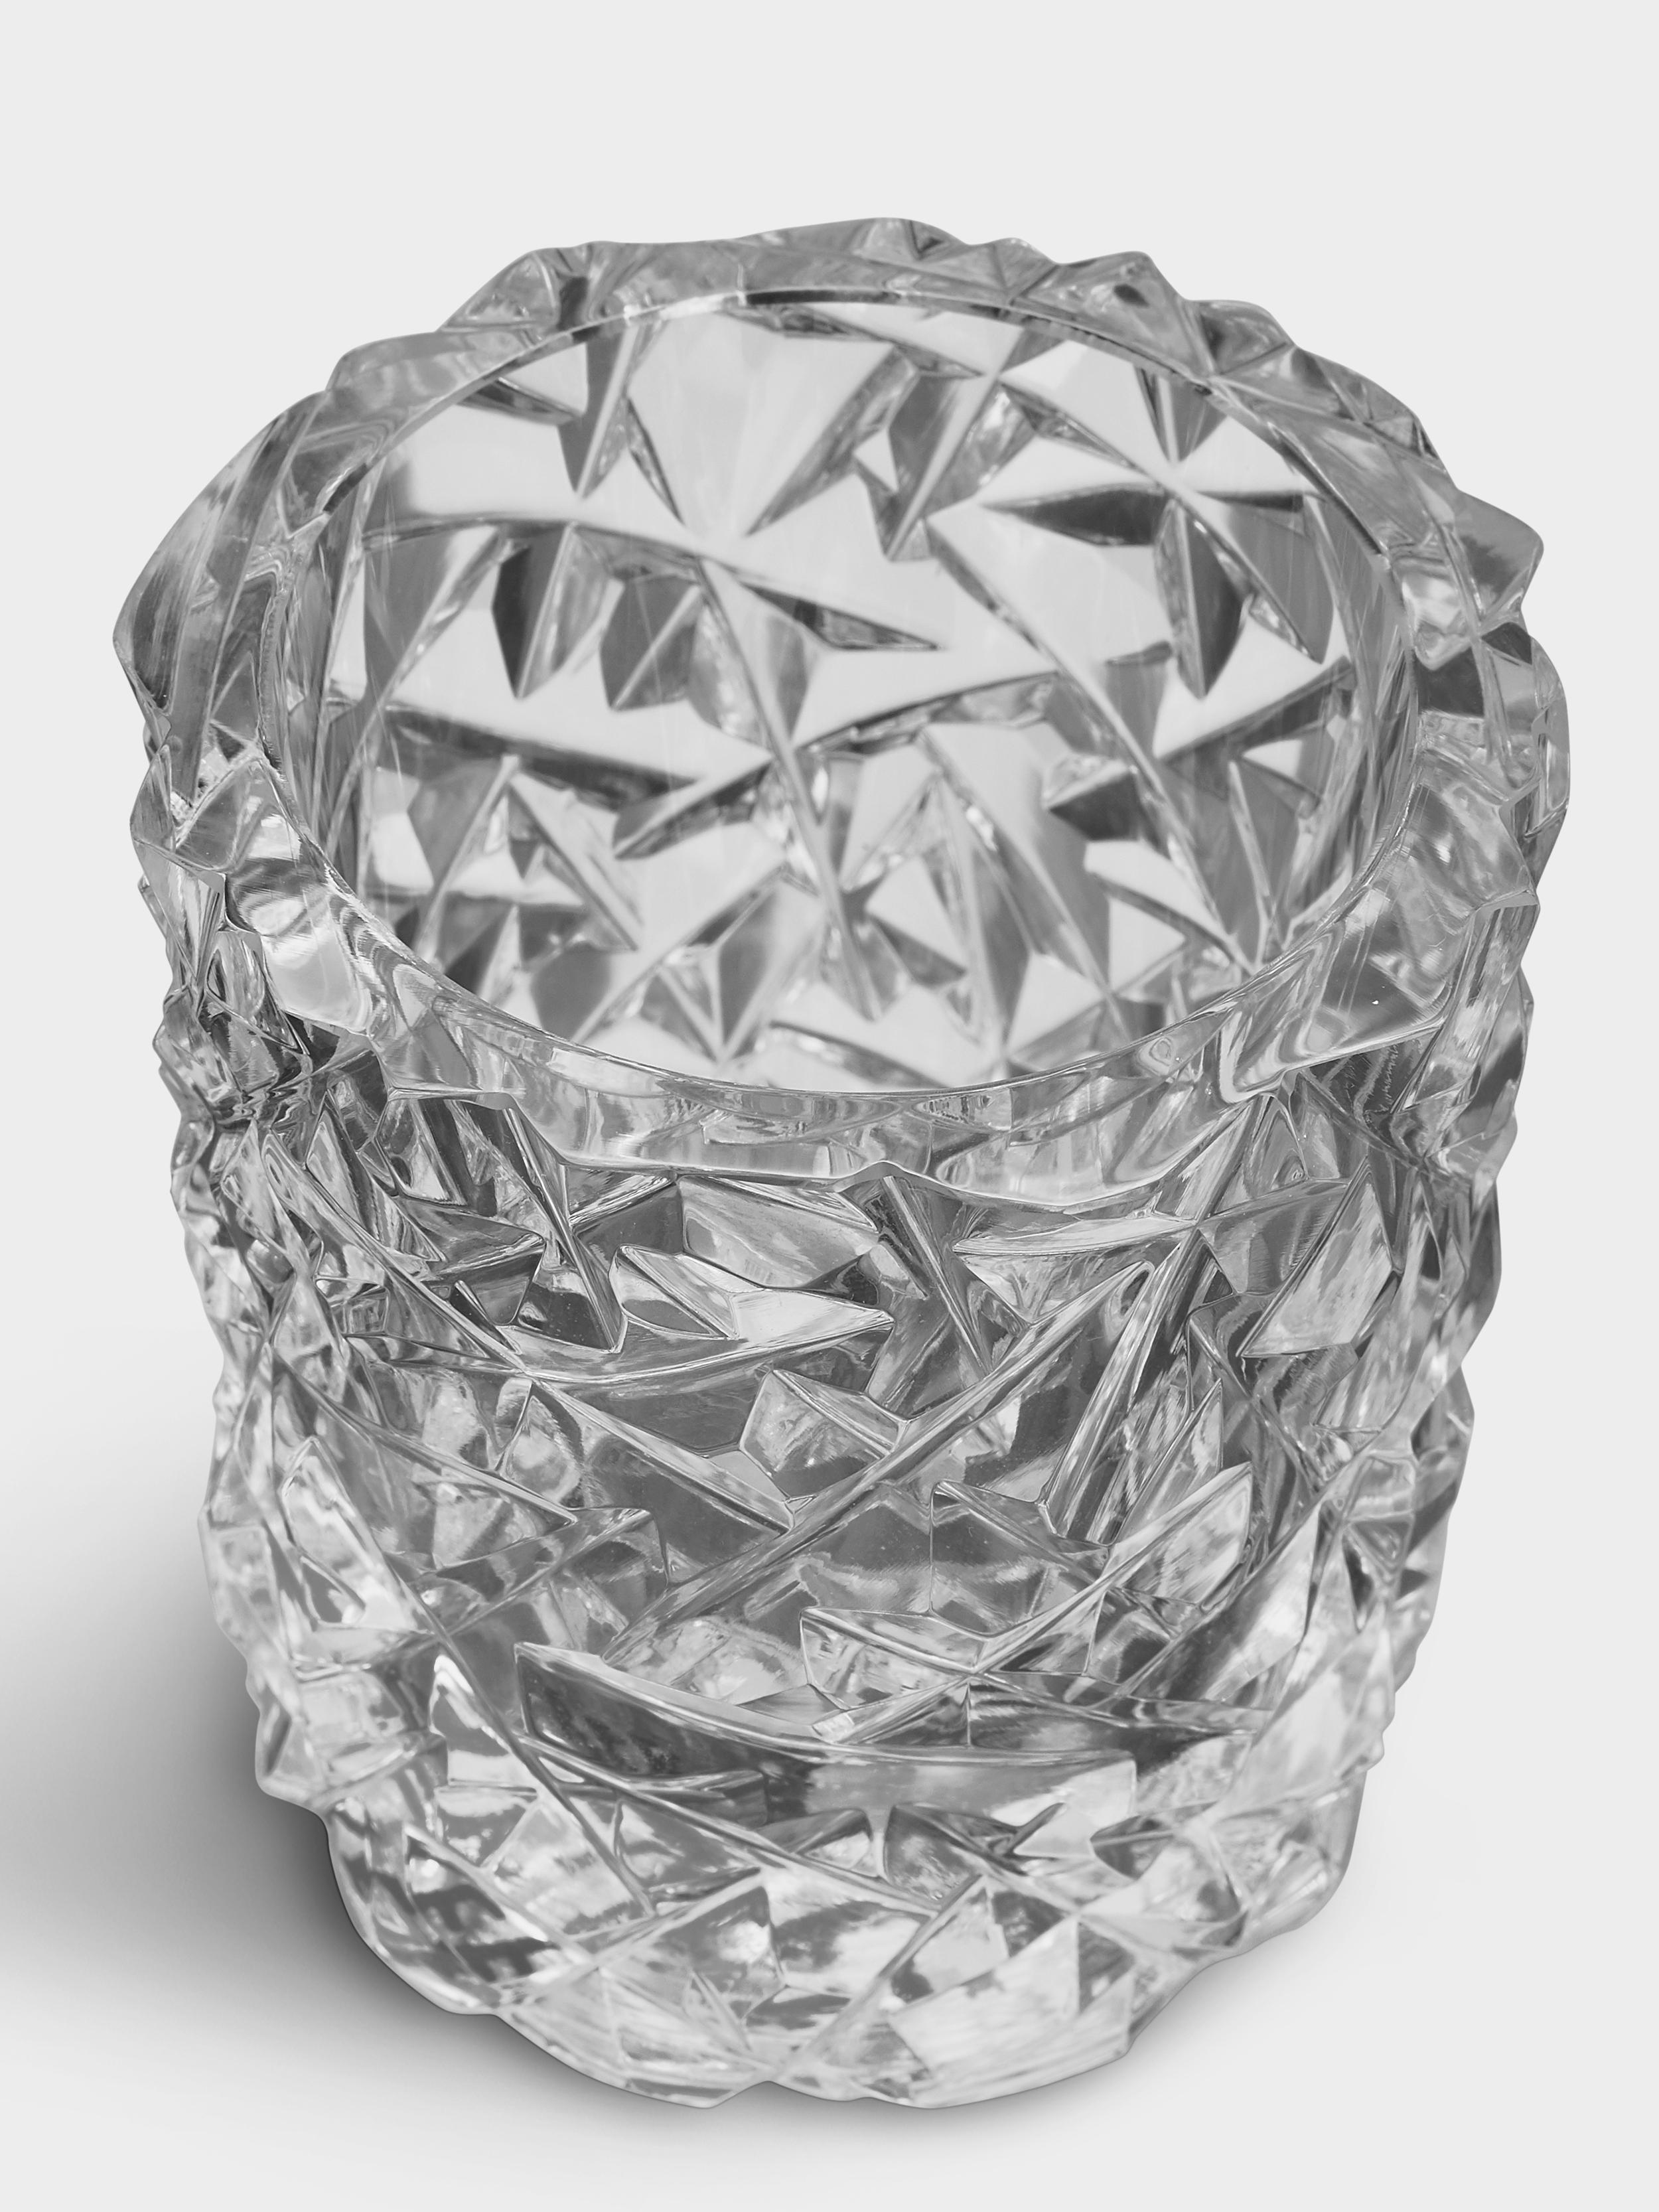 La collection Carat est basée sur une interprétation contemporaine du verre taillé traditionnel qui a fait la renommée mondiale d'Orrefors. Le bougeoir Carat, disponible en deux tailles, est recouvert du motif asymétrique caractéristique de la